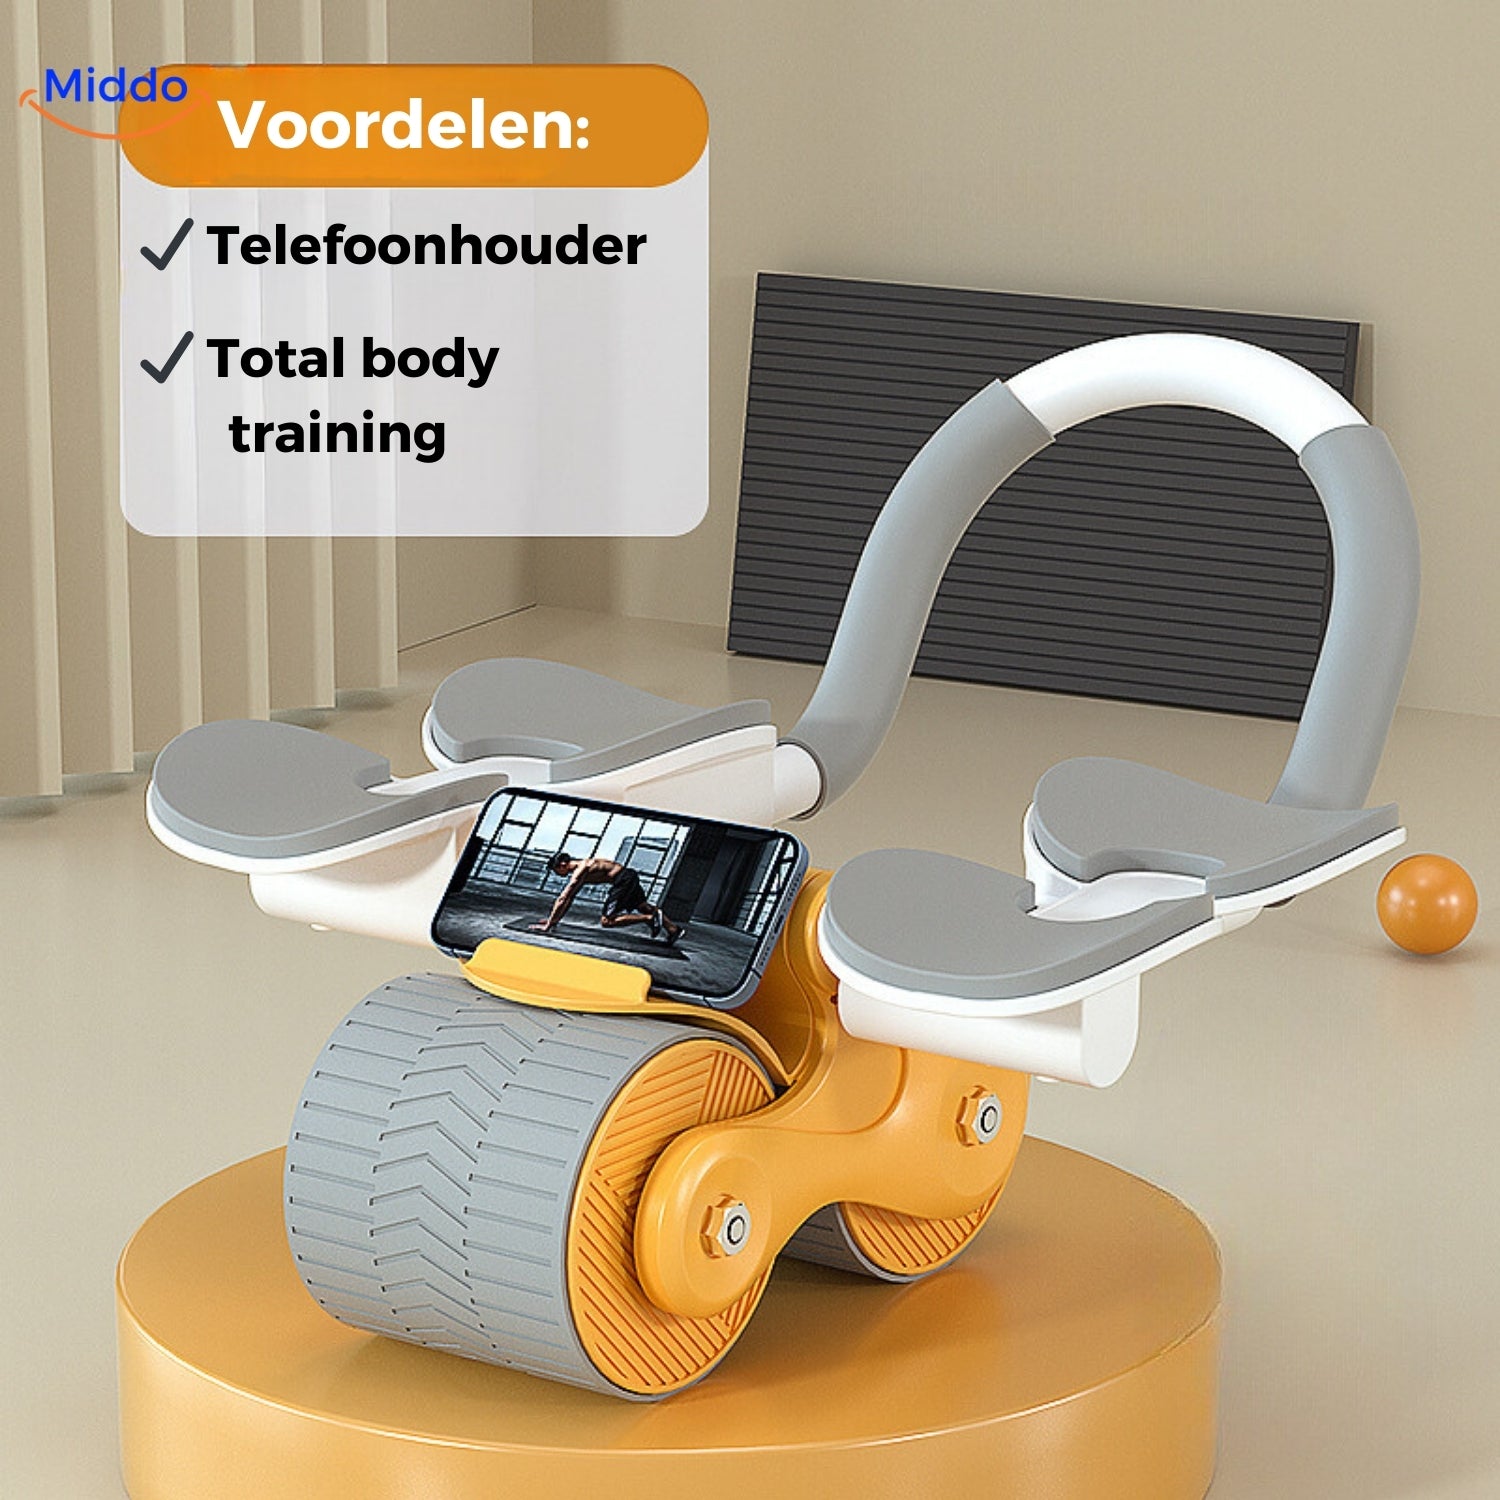 Oranje Abwheel pro buikspier trainer met telefoonhouder van Middo.nl